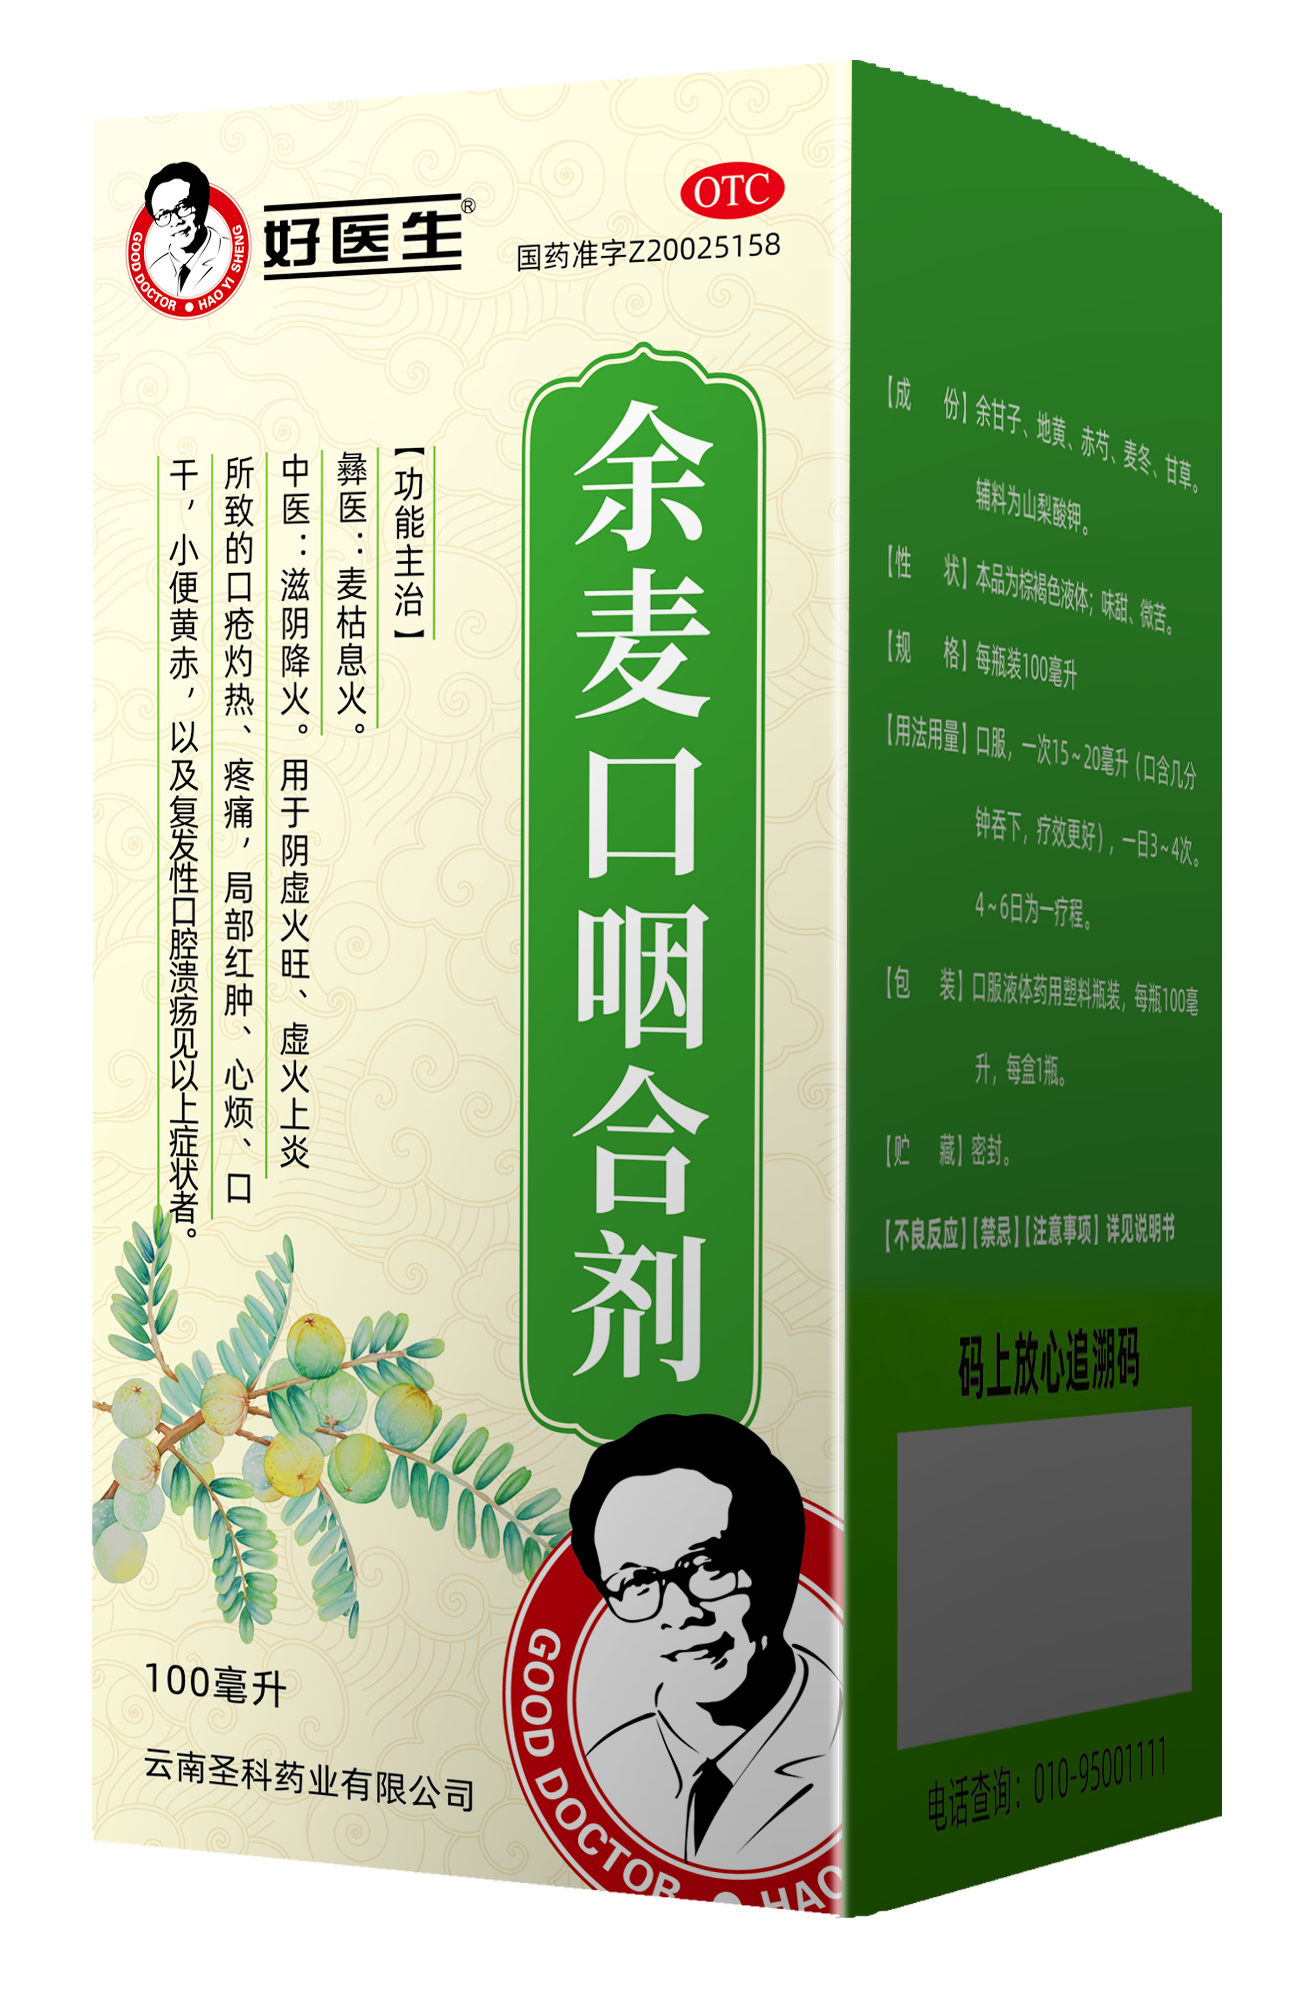 产品展示 - 陕西润华包装科技股份有限公司 - Shaanxi Runhua Packaging Technology Co.,Ltd